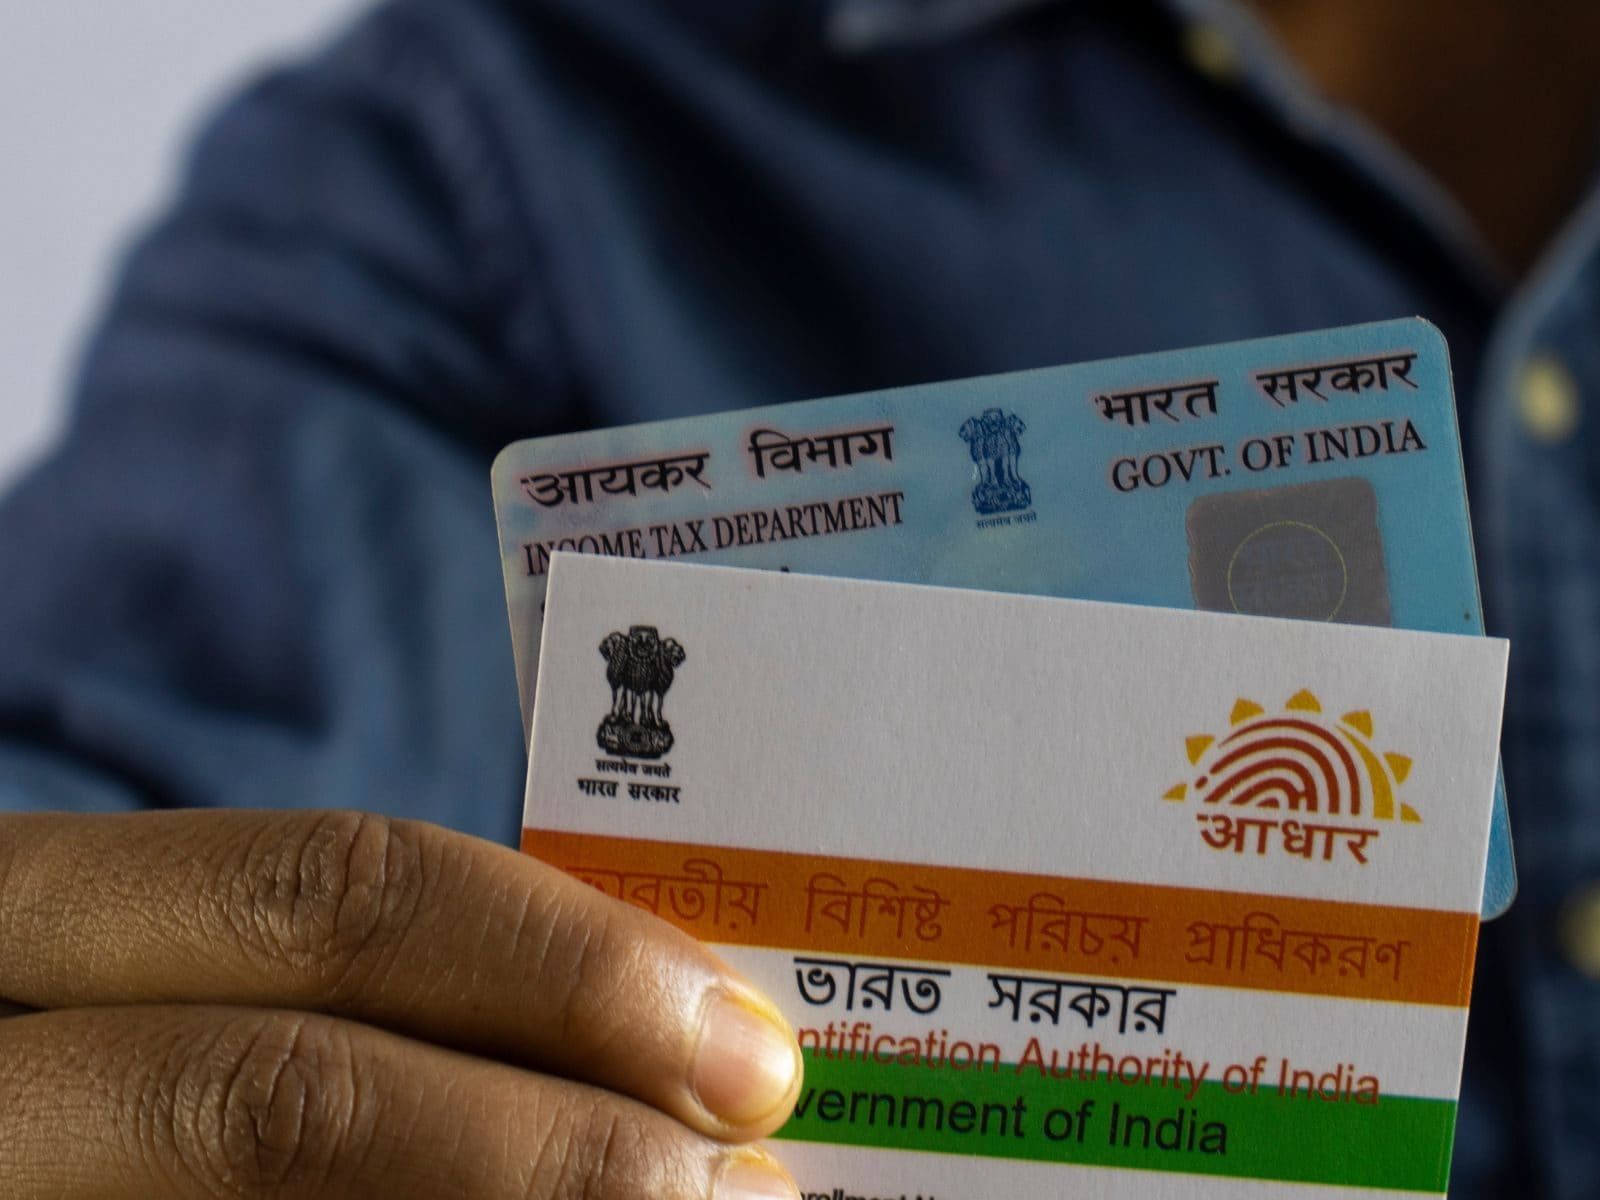 PAN- Aadhaar Link: 48 crores of people has linked their ID's says CBDT chairperson